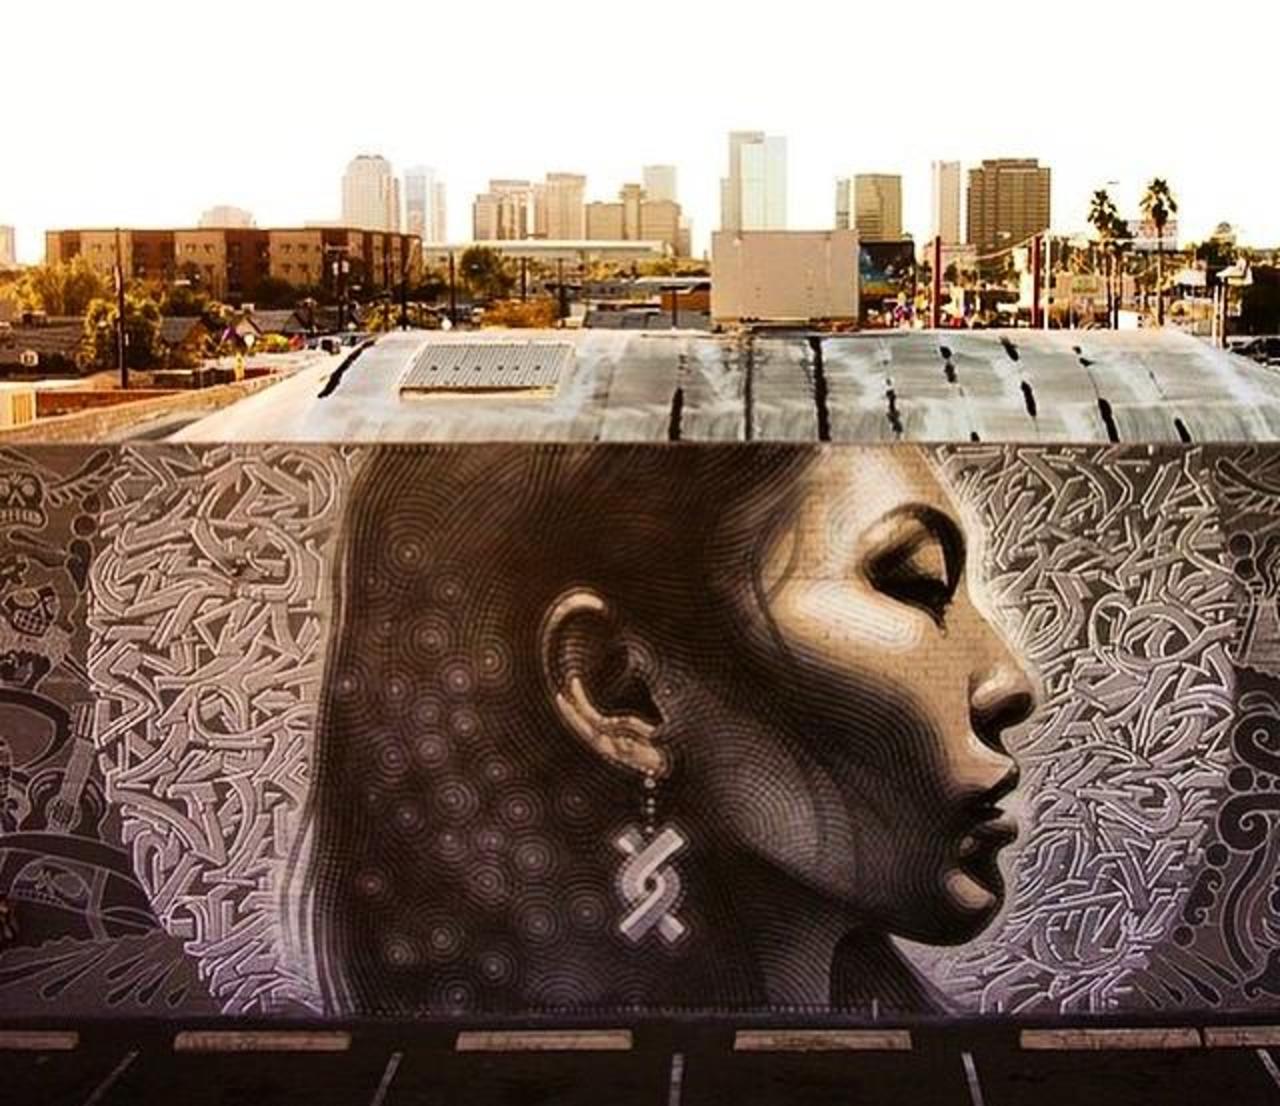 “@GoogleStreetArt: Latest Street Art work by El Mac in Phoenix, Arizona

#art #mural #graffiti #streetart 
http://t.co/Km8CrsKpNC”